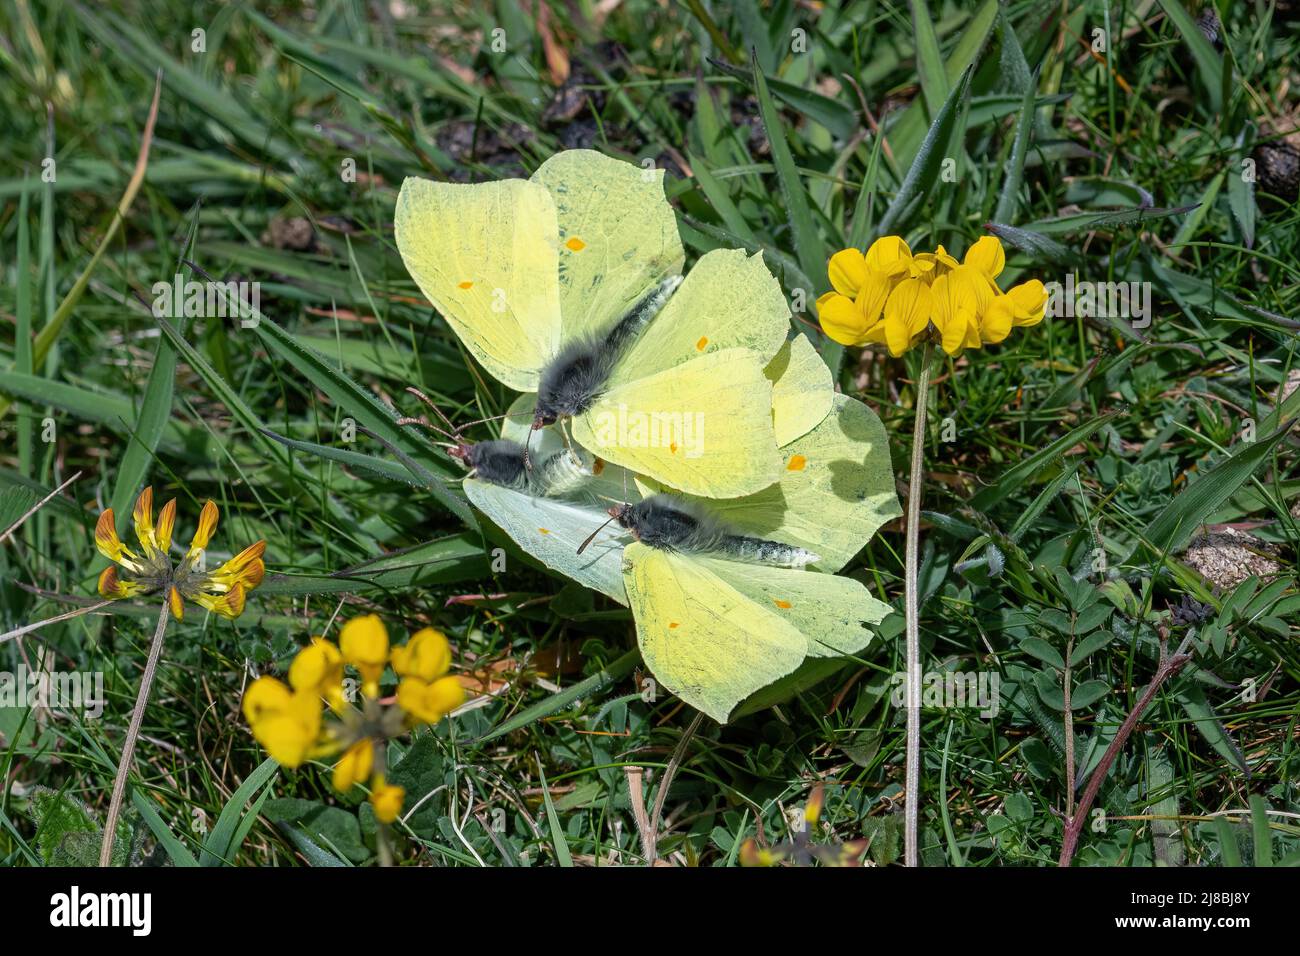 Farfalla di brimstone Gonepteryx rhamni comportamento corteggiamento. Farfalla femminile che respinge due farfalle maschili, Inghilterra, Regno Unito Foto Stock